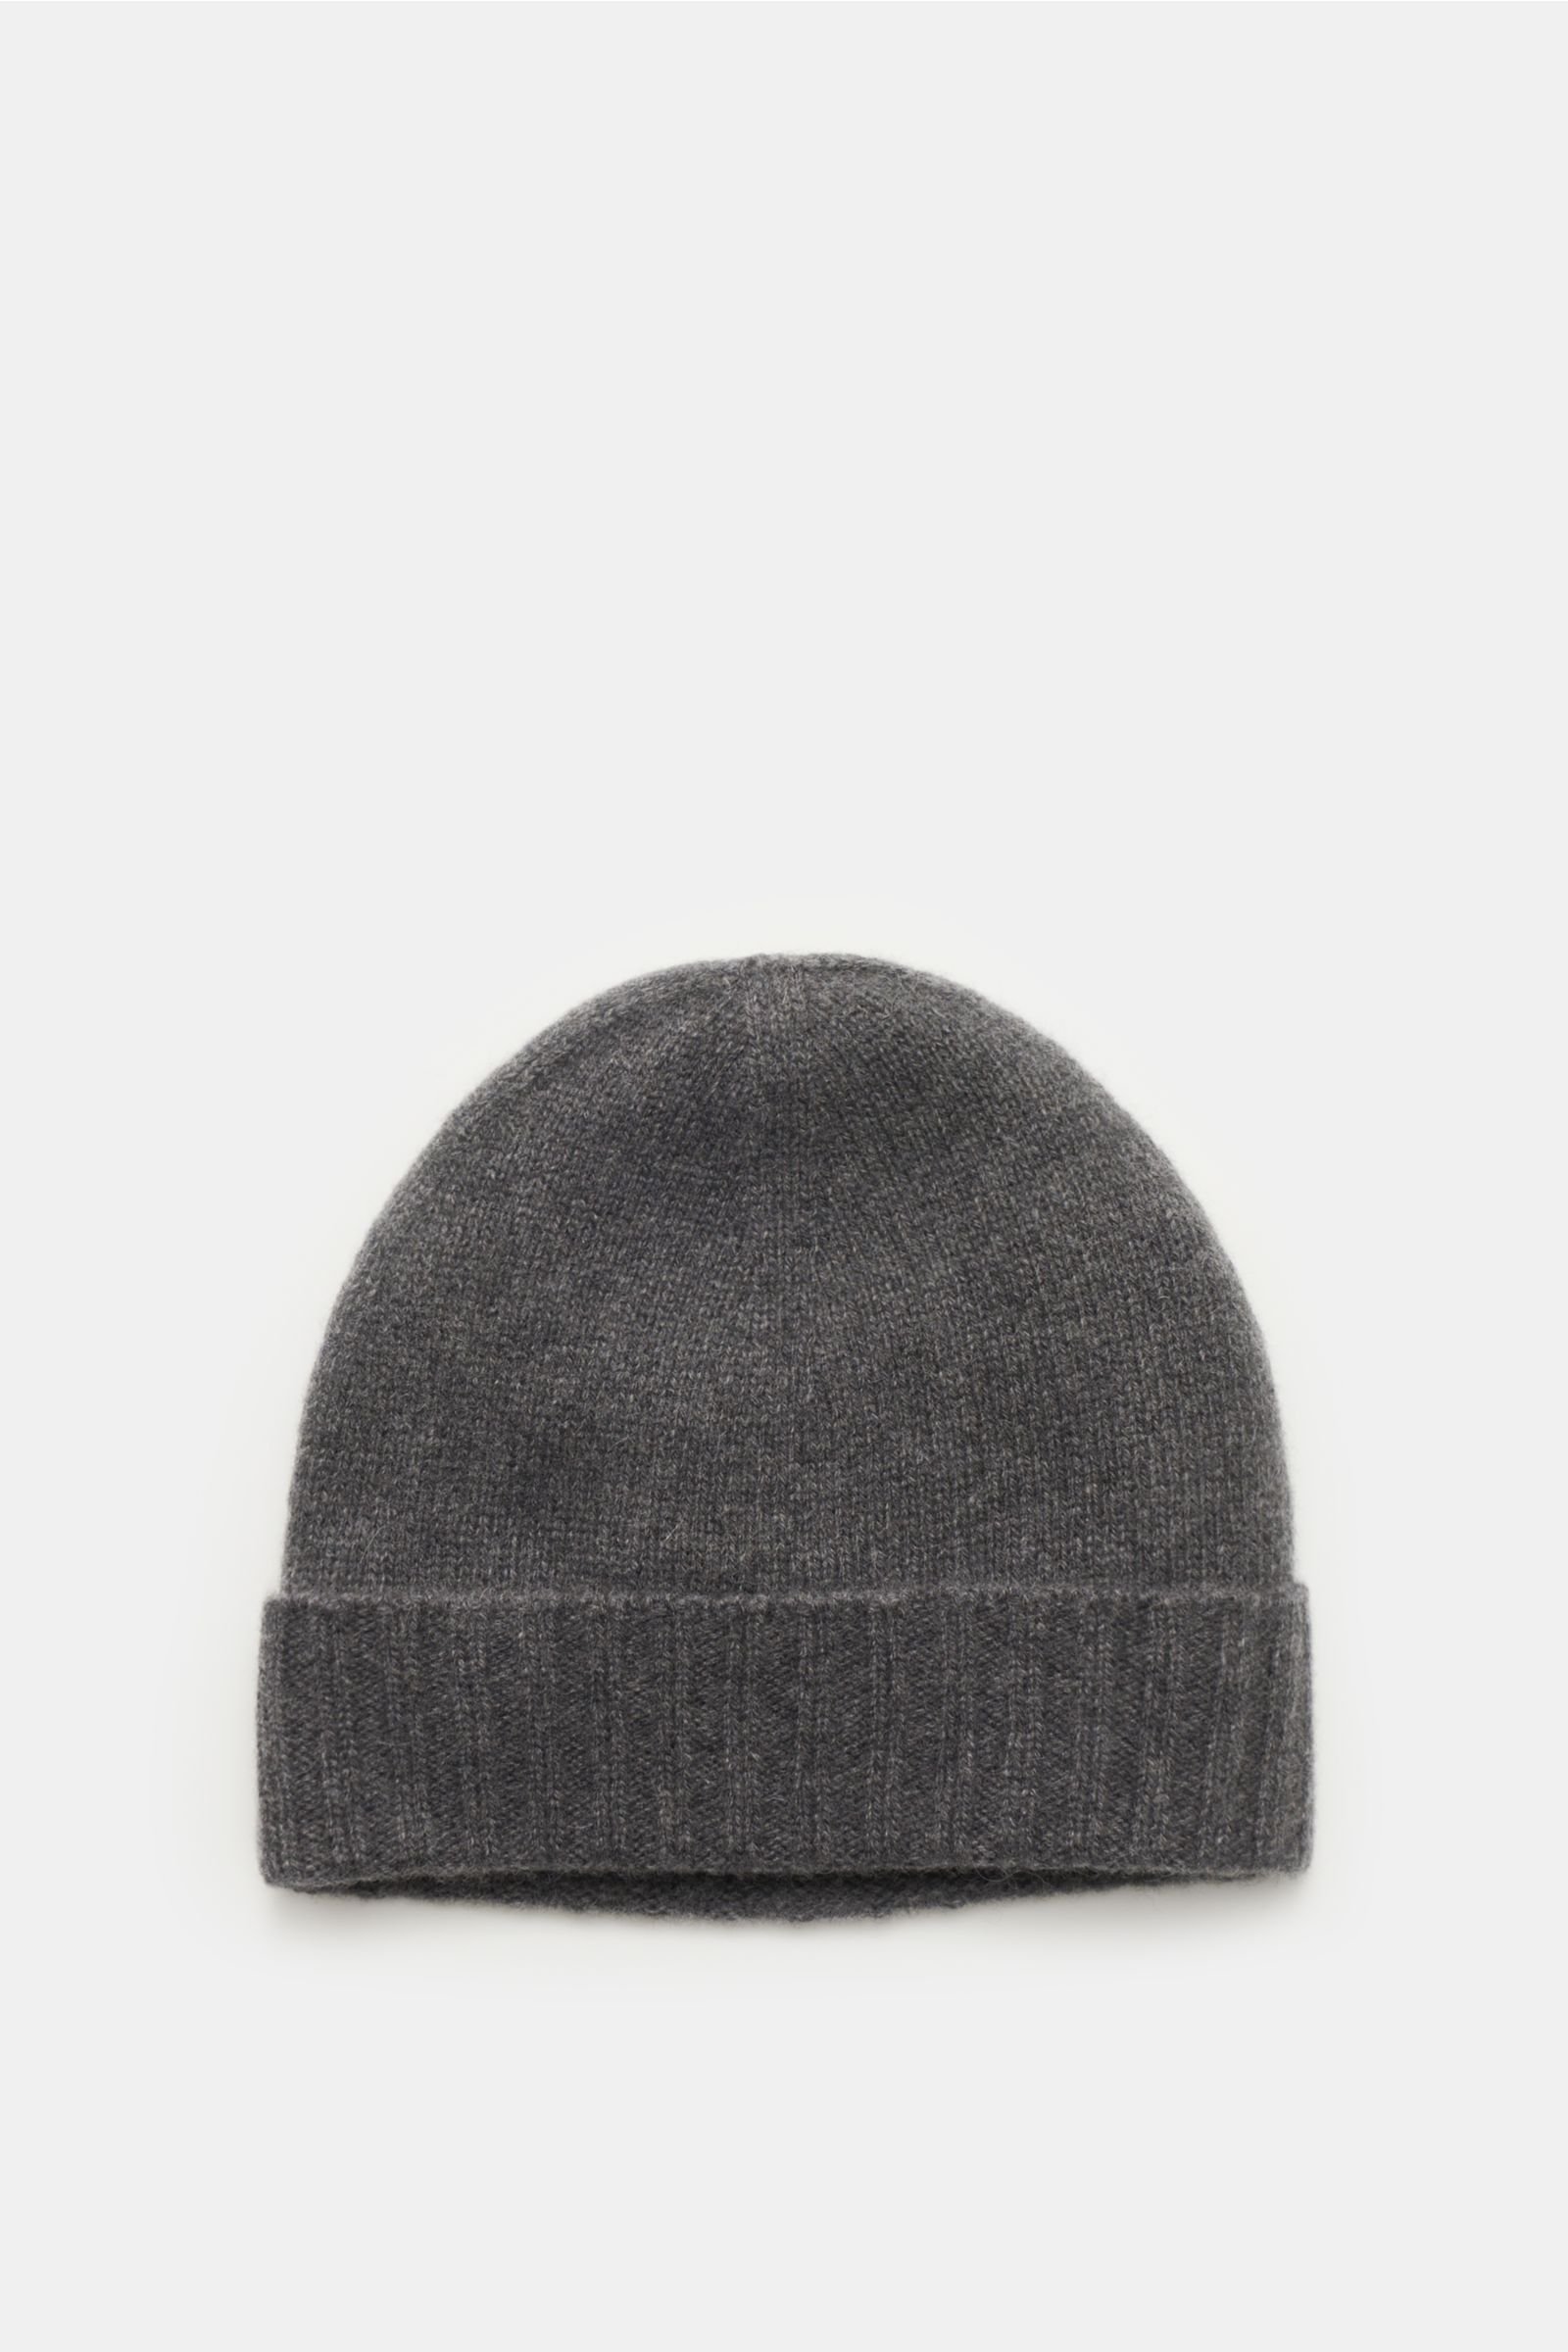 Cashmere beanie 'The Hat' dark grey